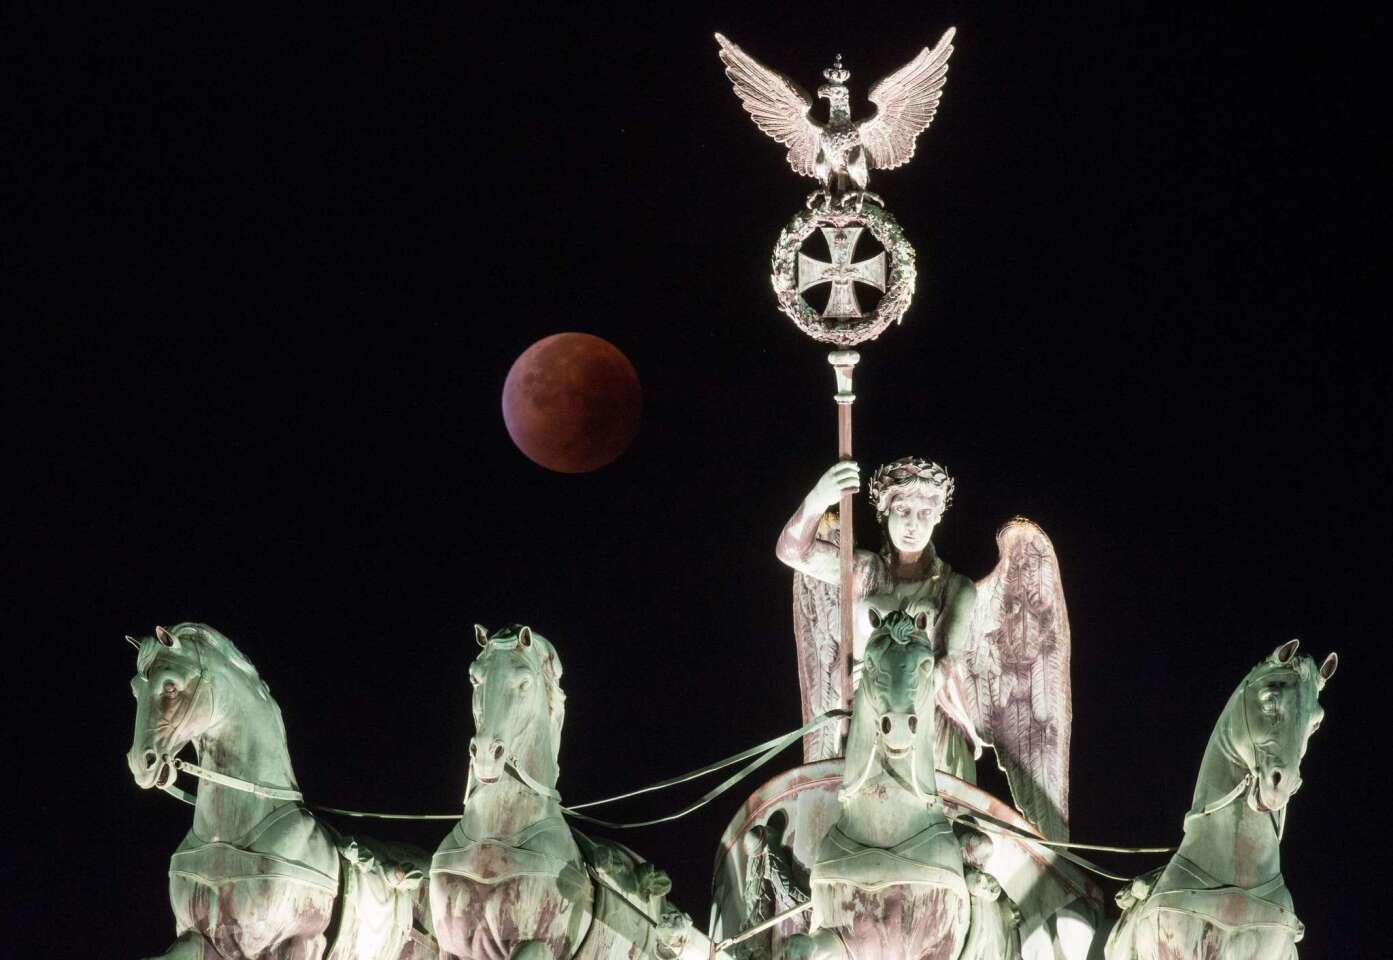 Blood moon lunar eclipse around the world